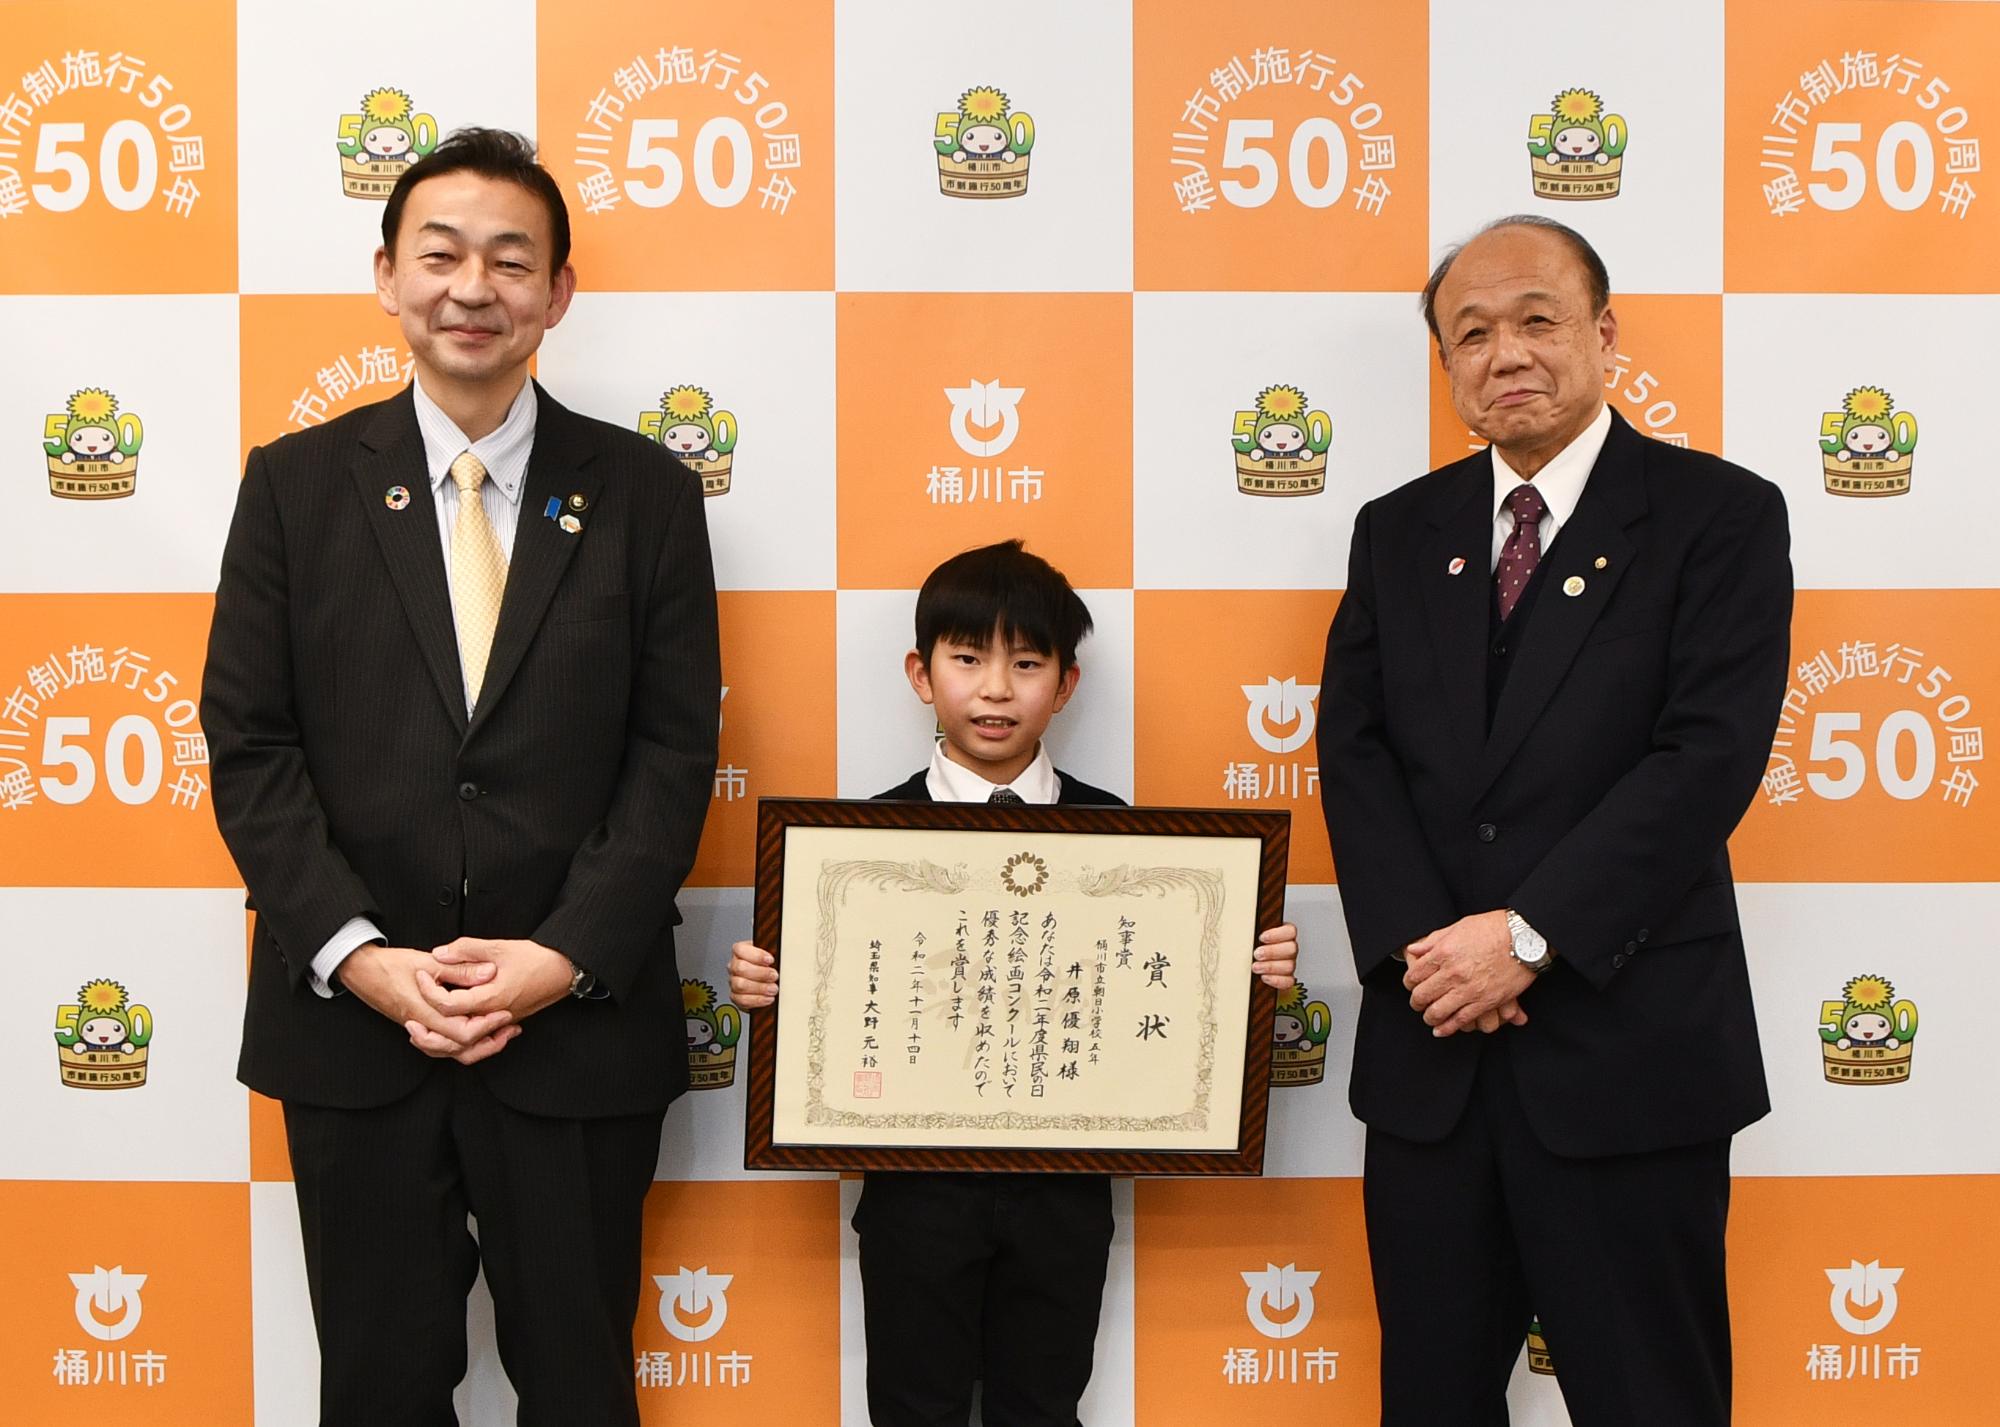 令和2年度「県民の日記念絵画コンクール」で受賞された児童と小野市長、岩田教育長のスリーショット写真